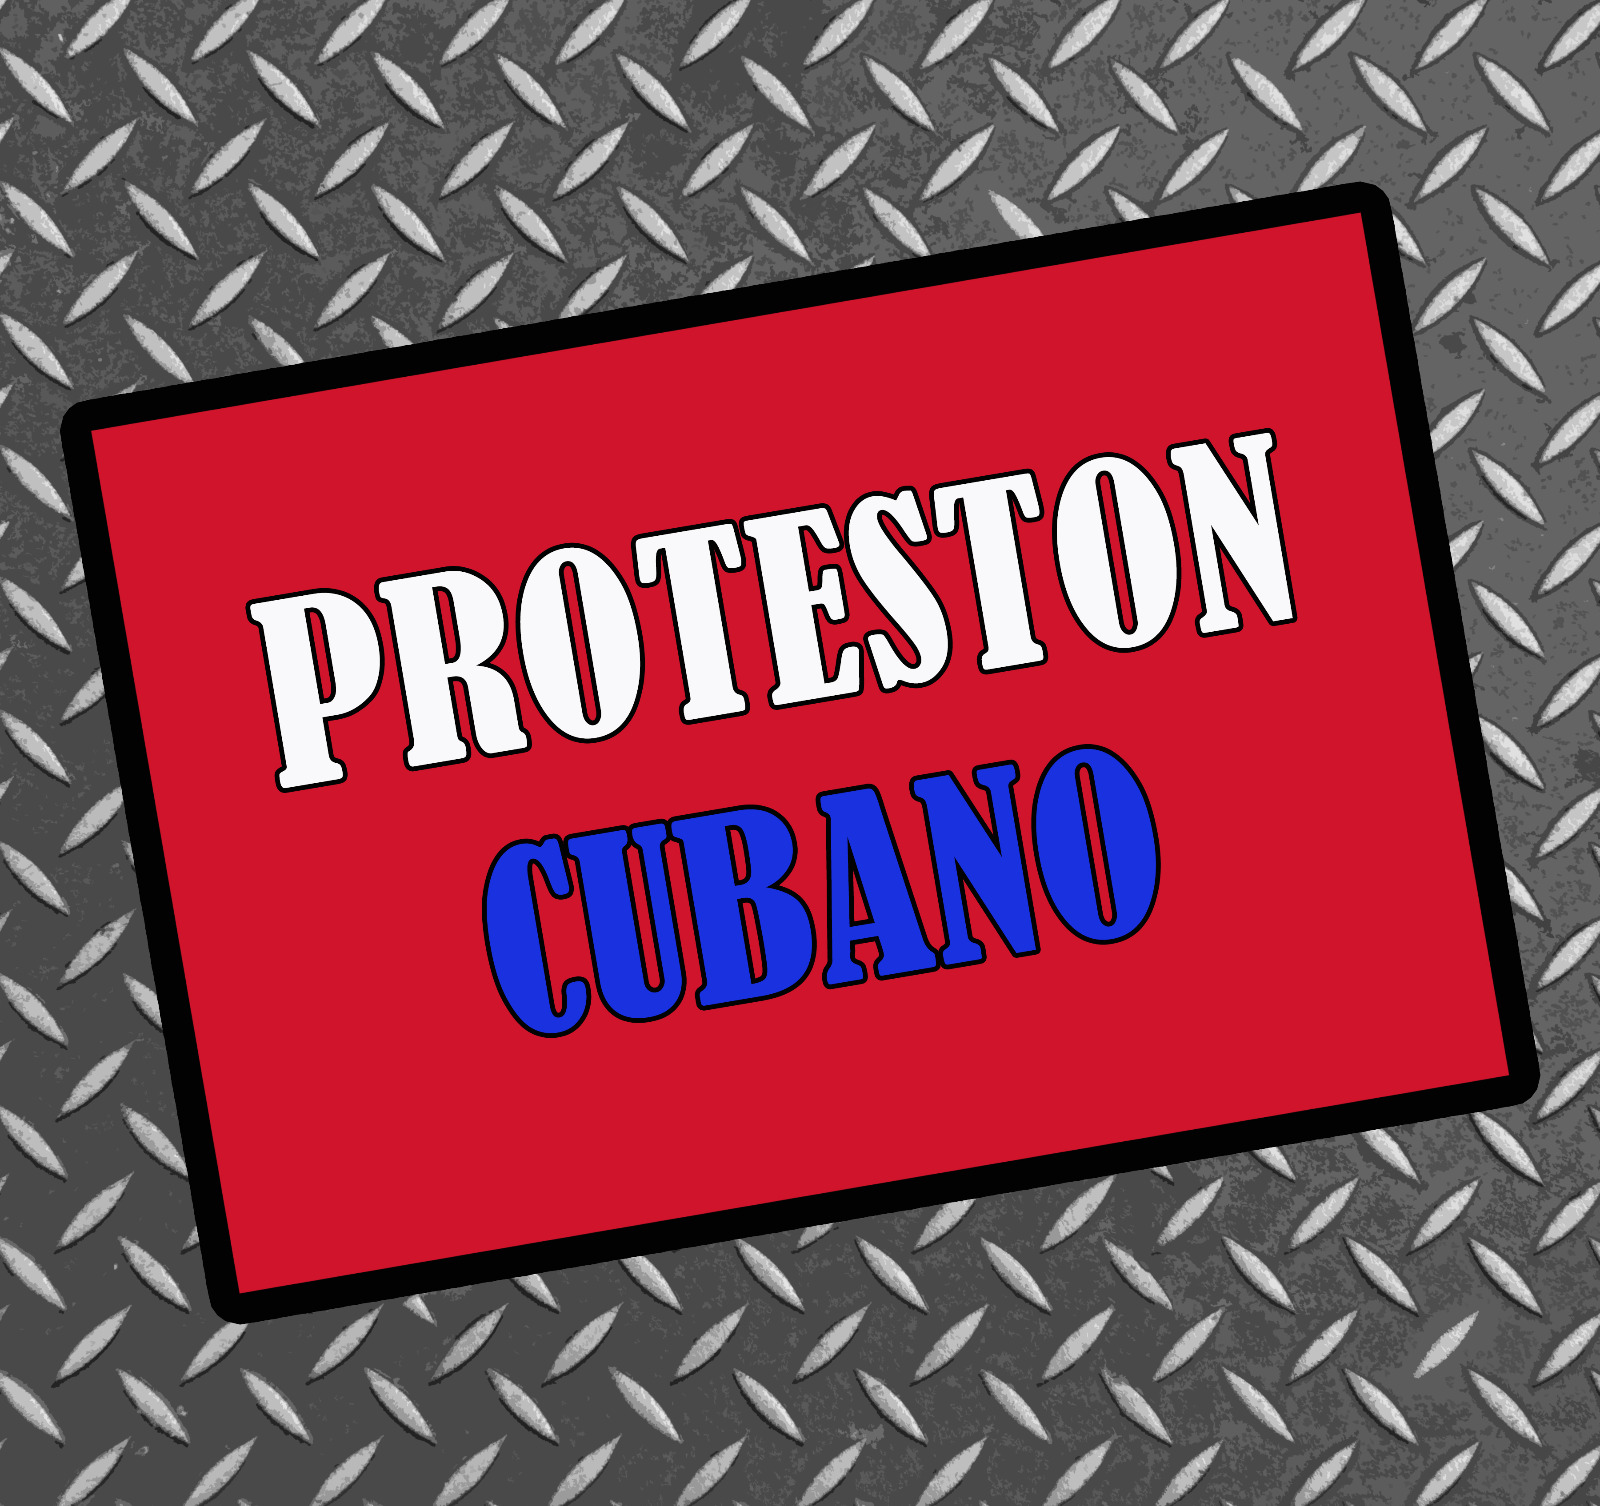 PROTESTON CUBANO